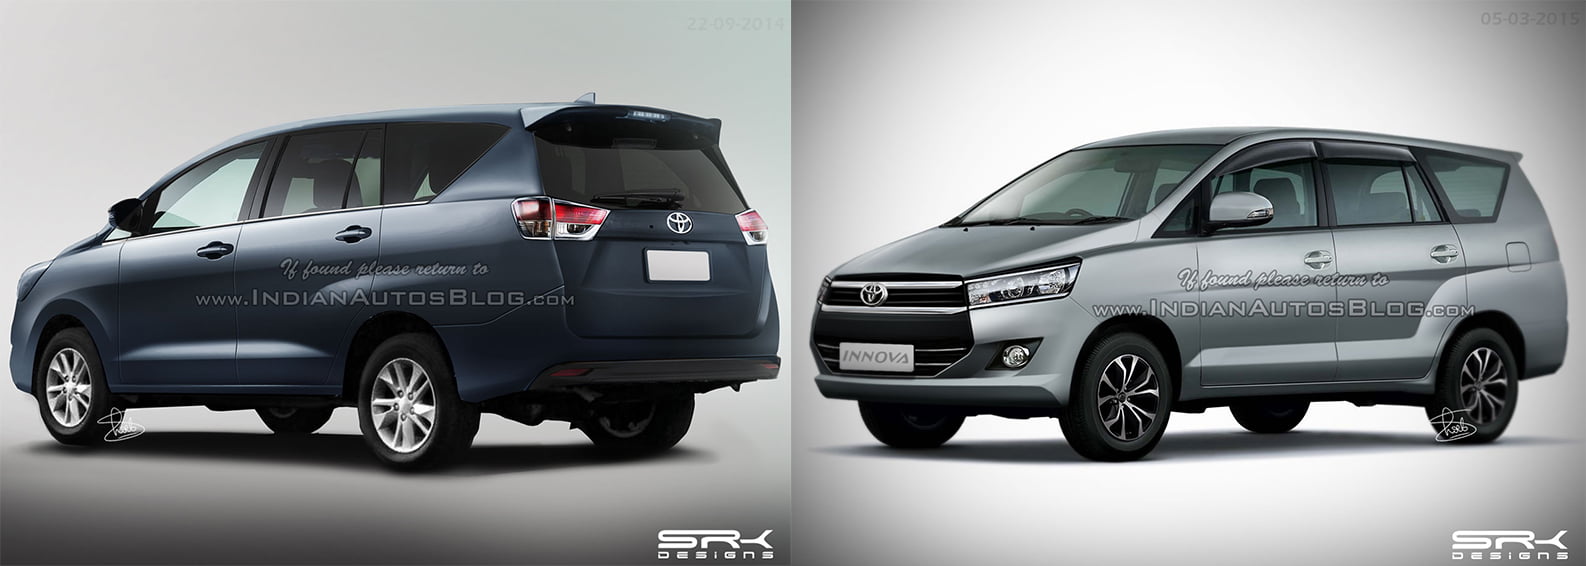 2015 Car News Auto Photos Prices Release Dates Toyota Innova